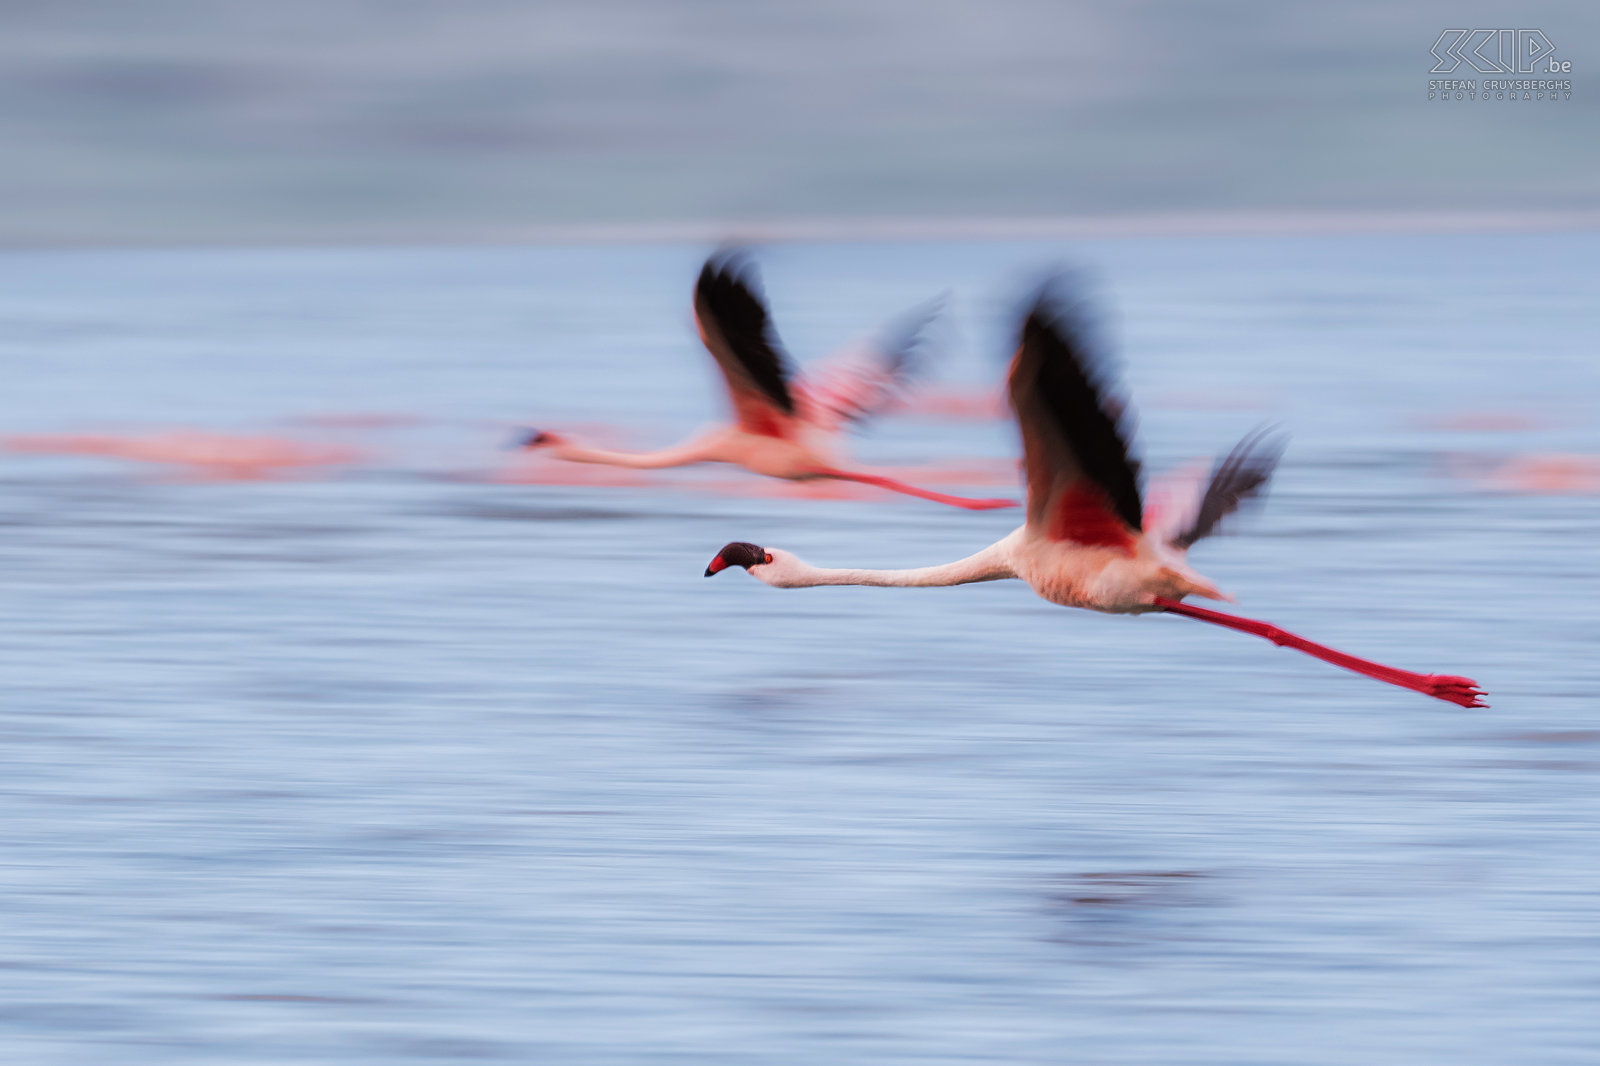 Lake Chitu - Flamingo's Lake Chitu is een kratermeer van 0.8 km2 en 21m diep. De blauwgroene alg levert het hele jaar door voedsel voor meer dan 10 000 flamingo's en het meer heeft een hoog zoutgehalte. De gewone flamingo (Greater flamingo, Phoenicopterus roseus) is de grootste flamingo-soort. Het merendeel van het verenkleed is roze-wit maar de vleugeldekveren zijn rood. Jonge vogels hebben een grijze kleur. Ik heb geprobeerd om enkele panning foto's te maken van flamingo's in de vlucht. Stefan Cruysberghs